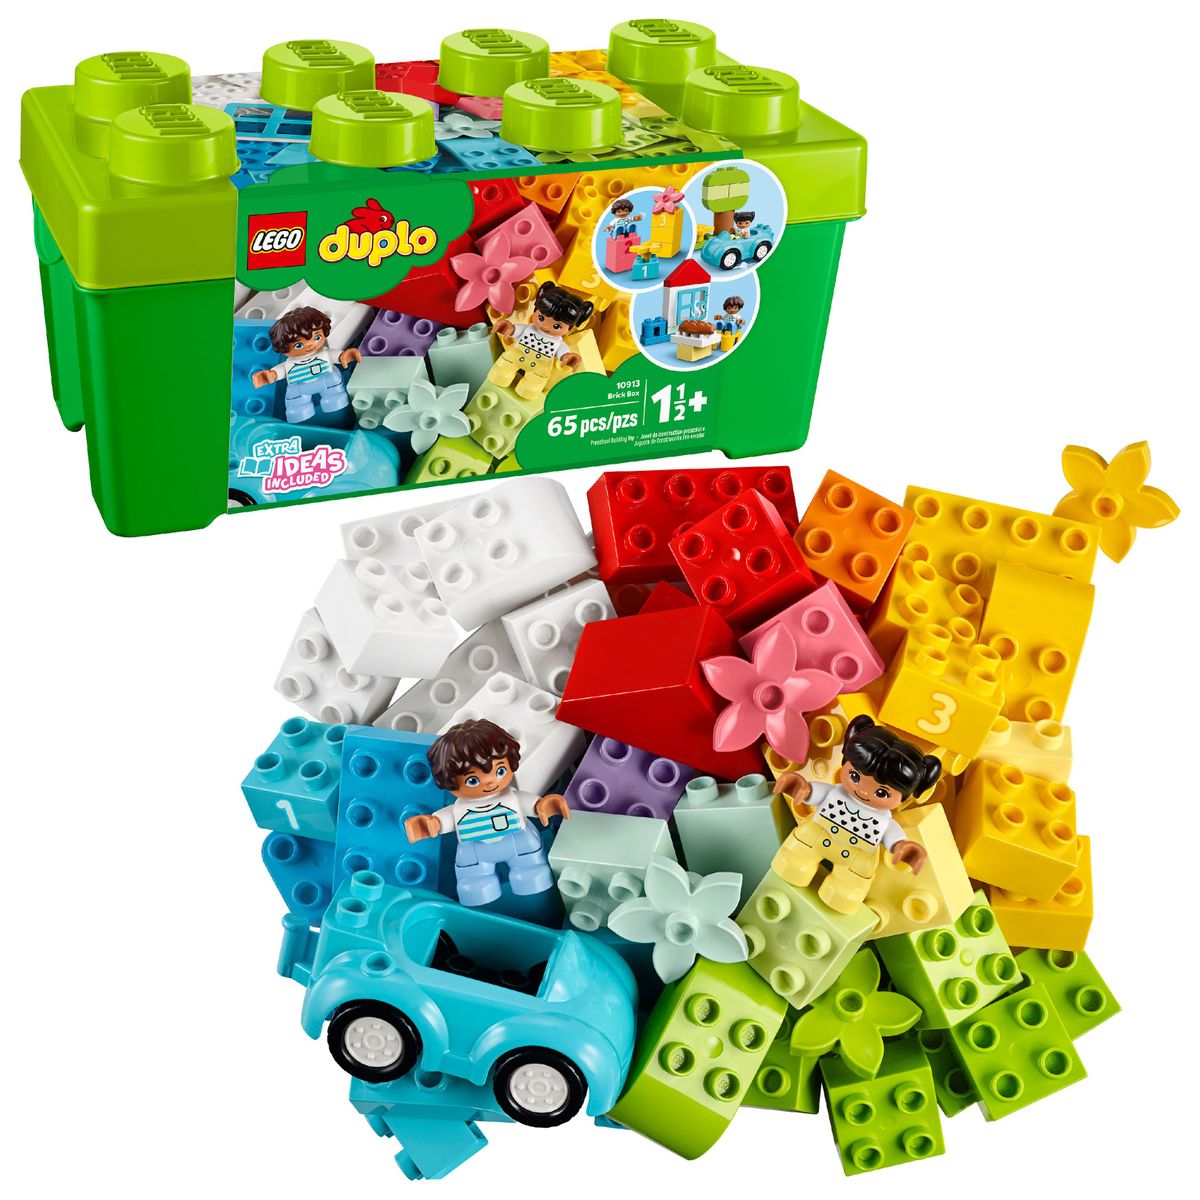 レゴ®デュプロ [RDY] [送料無料] レゴ デュプロ デュプロのコンテナ デラックス LEGO 10913 65ピース 大きいブロック ビルディングキット おもちゃ 幼児 玩具 知育玩具 組み立て ブロック [楽天海外通販]